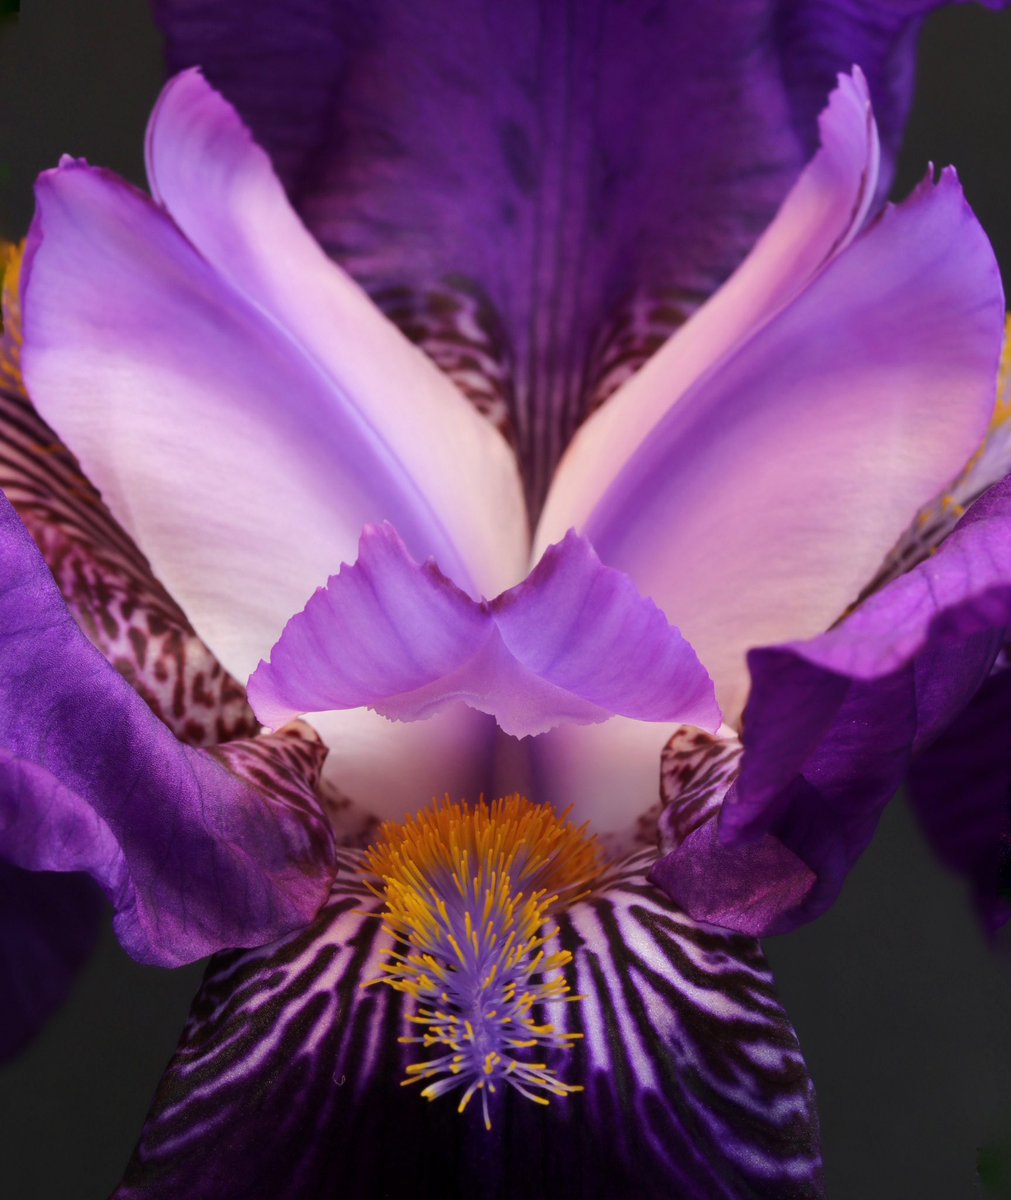 Nice detail on this #iris

@MacroHour @The_RHS #FlowersOfTwitter #macro #NatureIsAmazing #flowerlovers